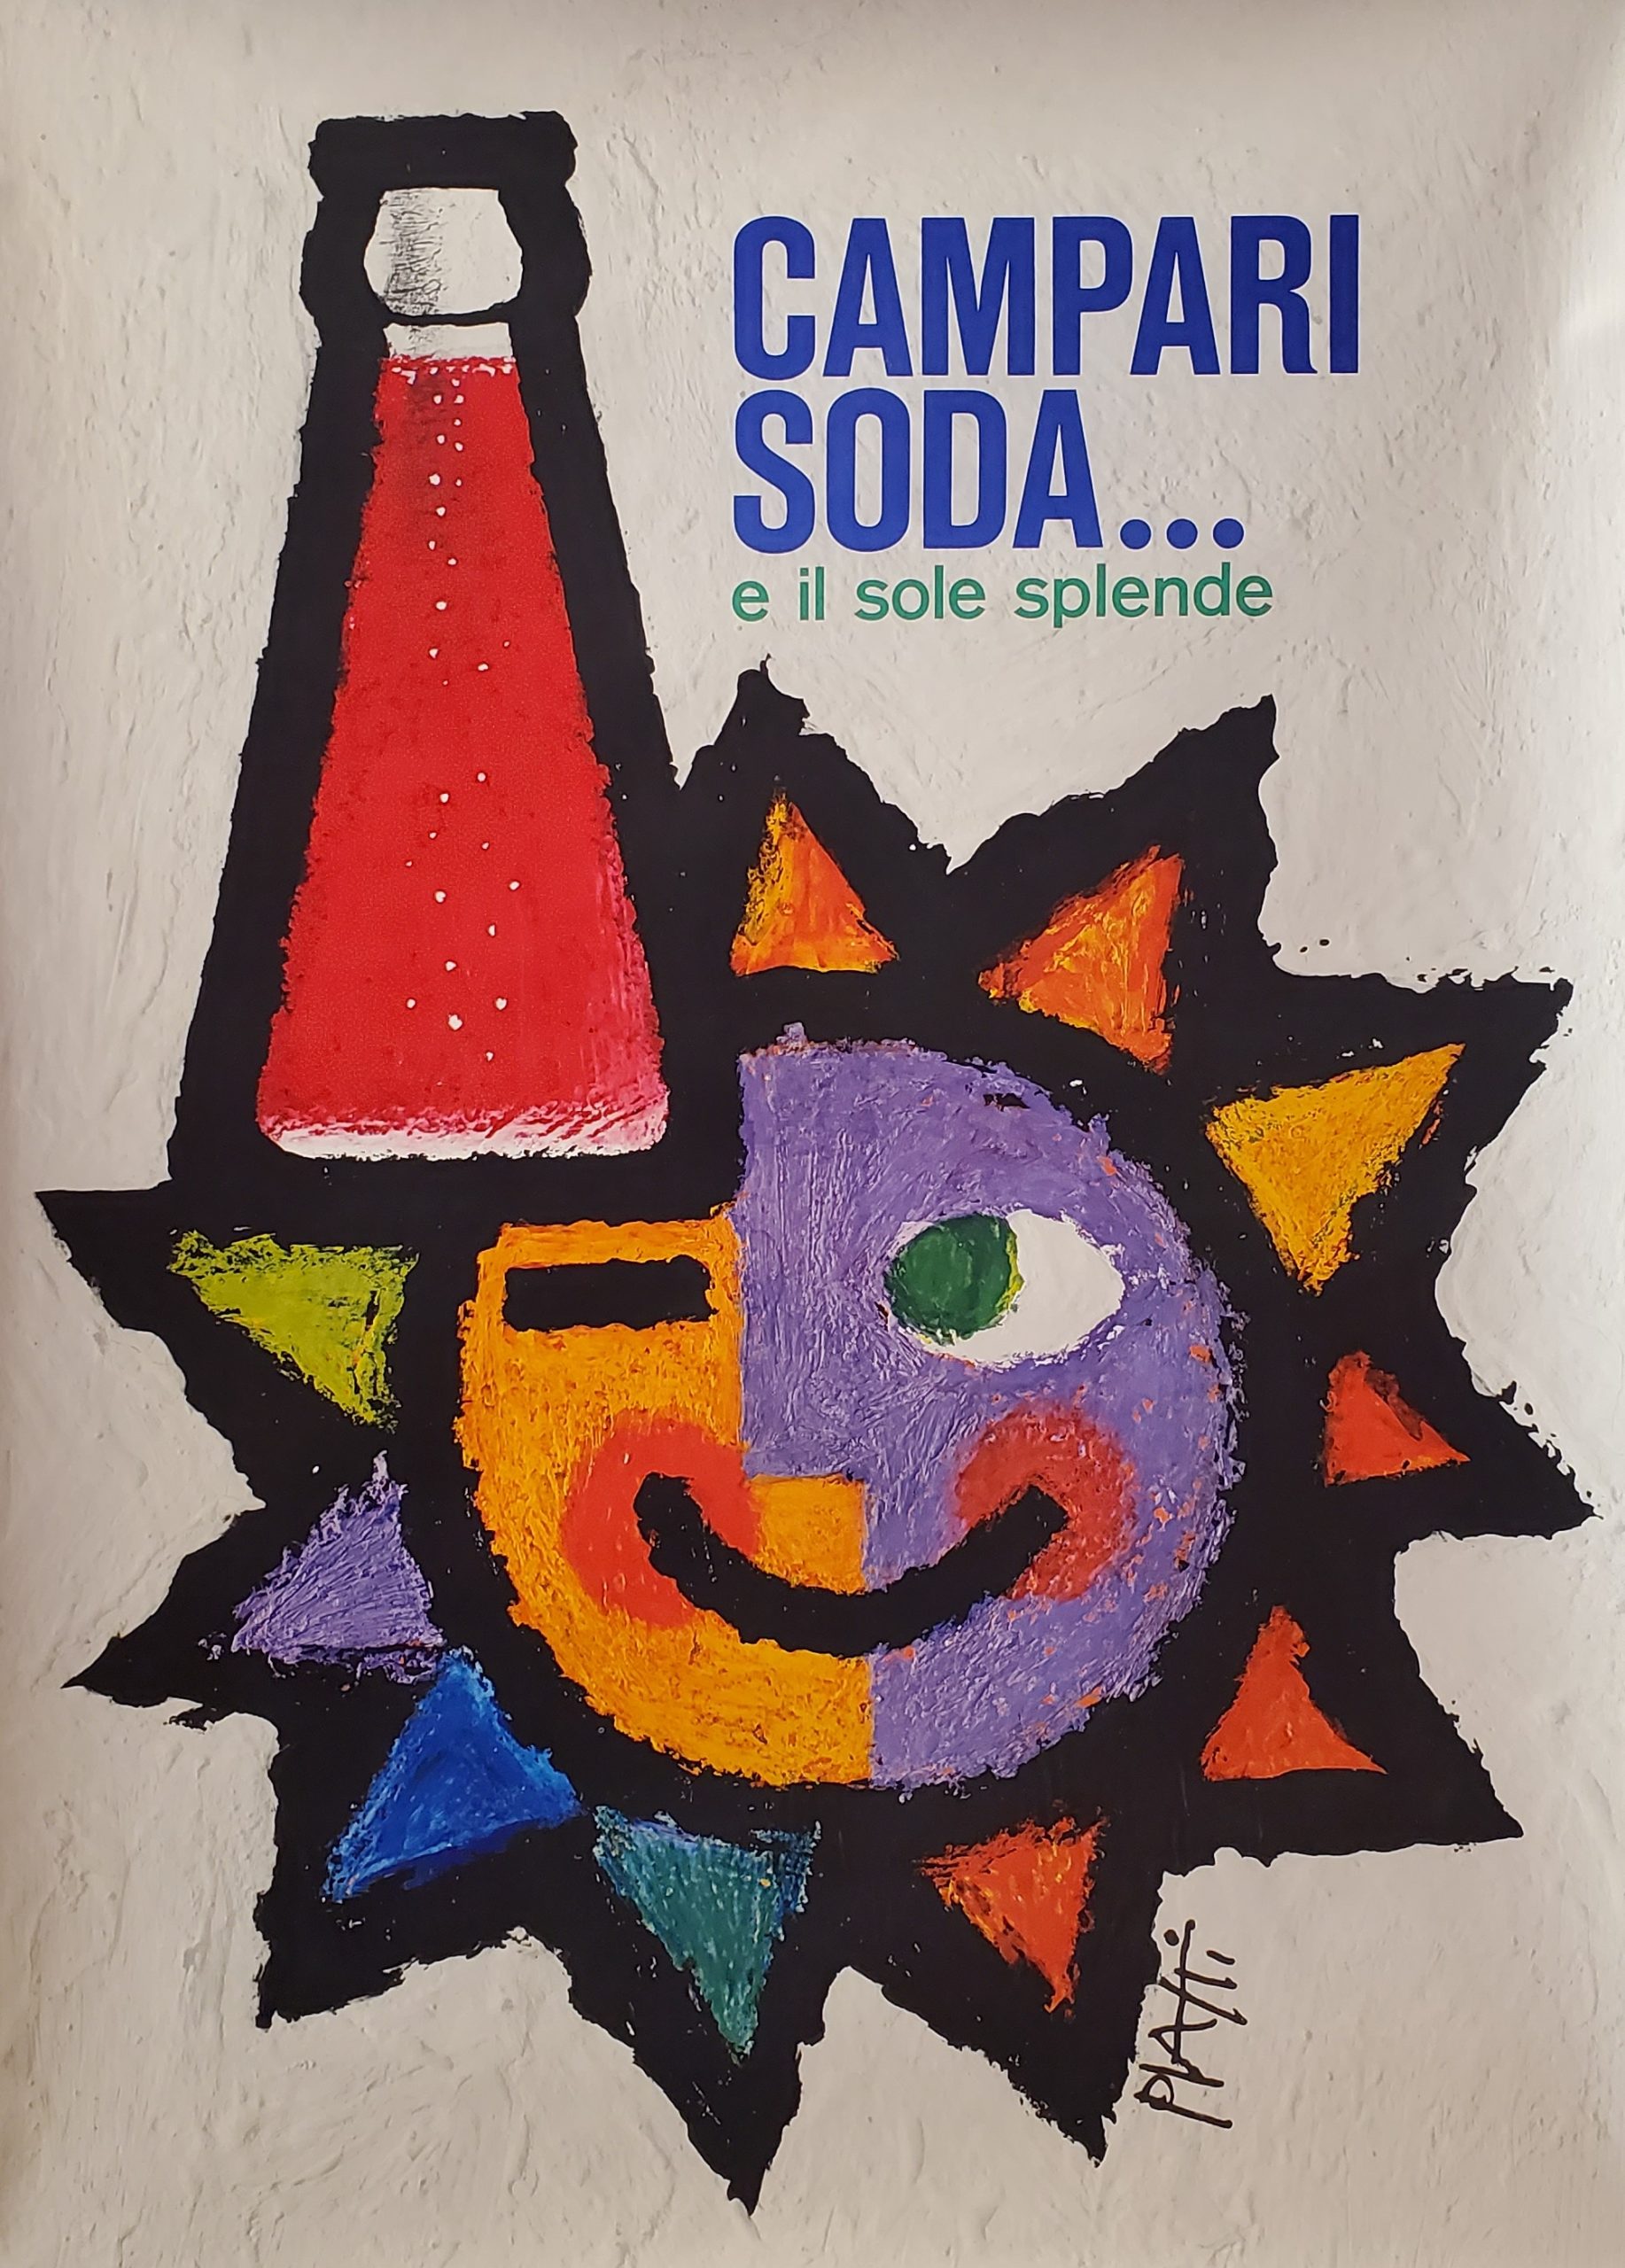 Campari Soda by Piatti Original vintage poster